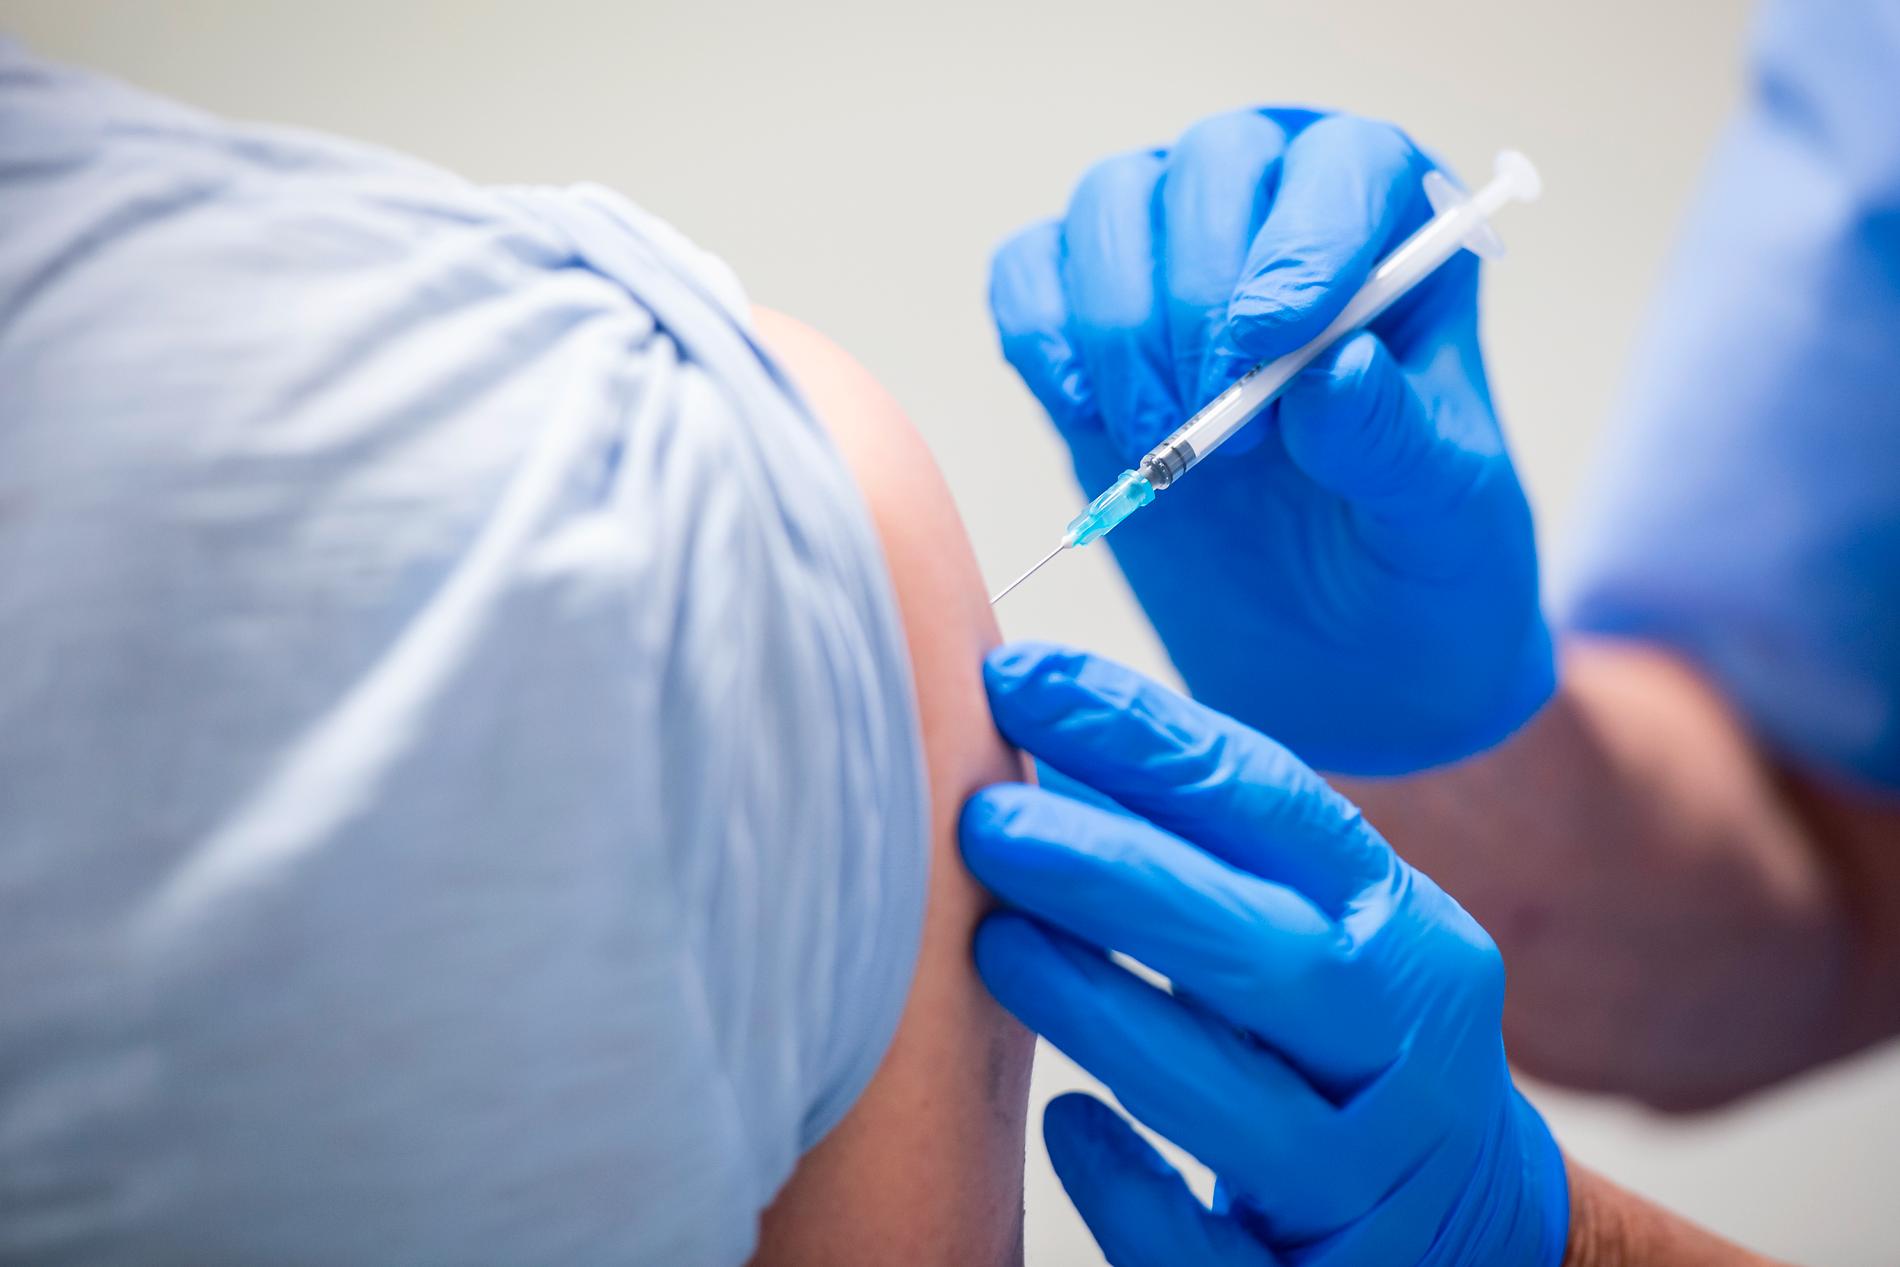 Vaccinationsviljan är hög i landet, meddelar Emma Spak.